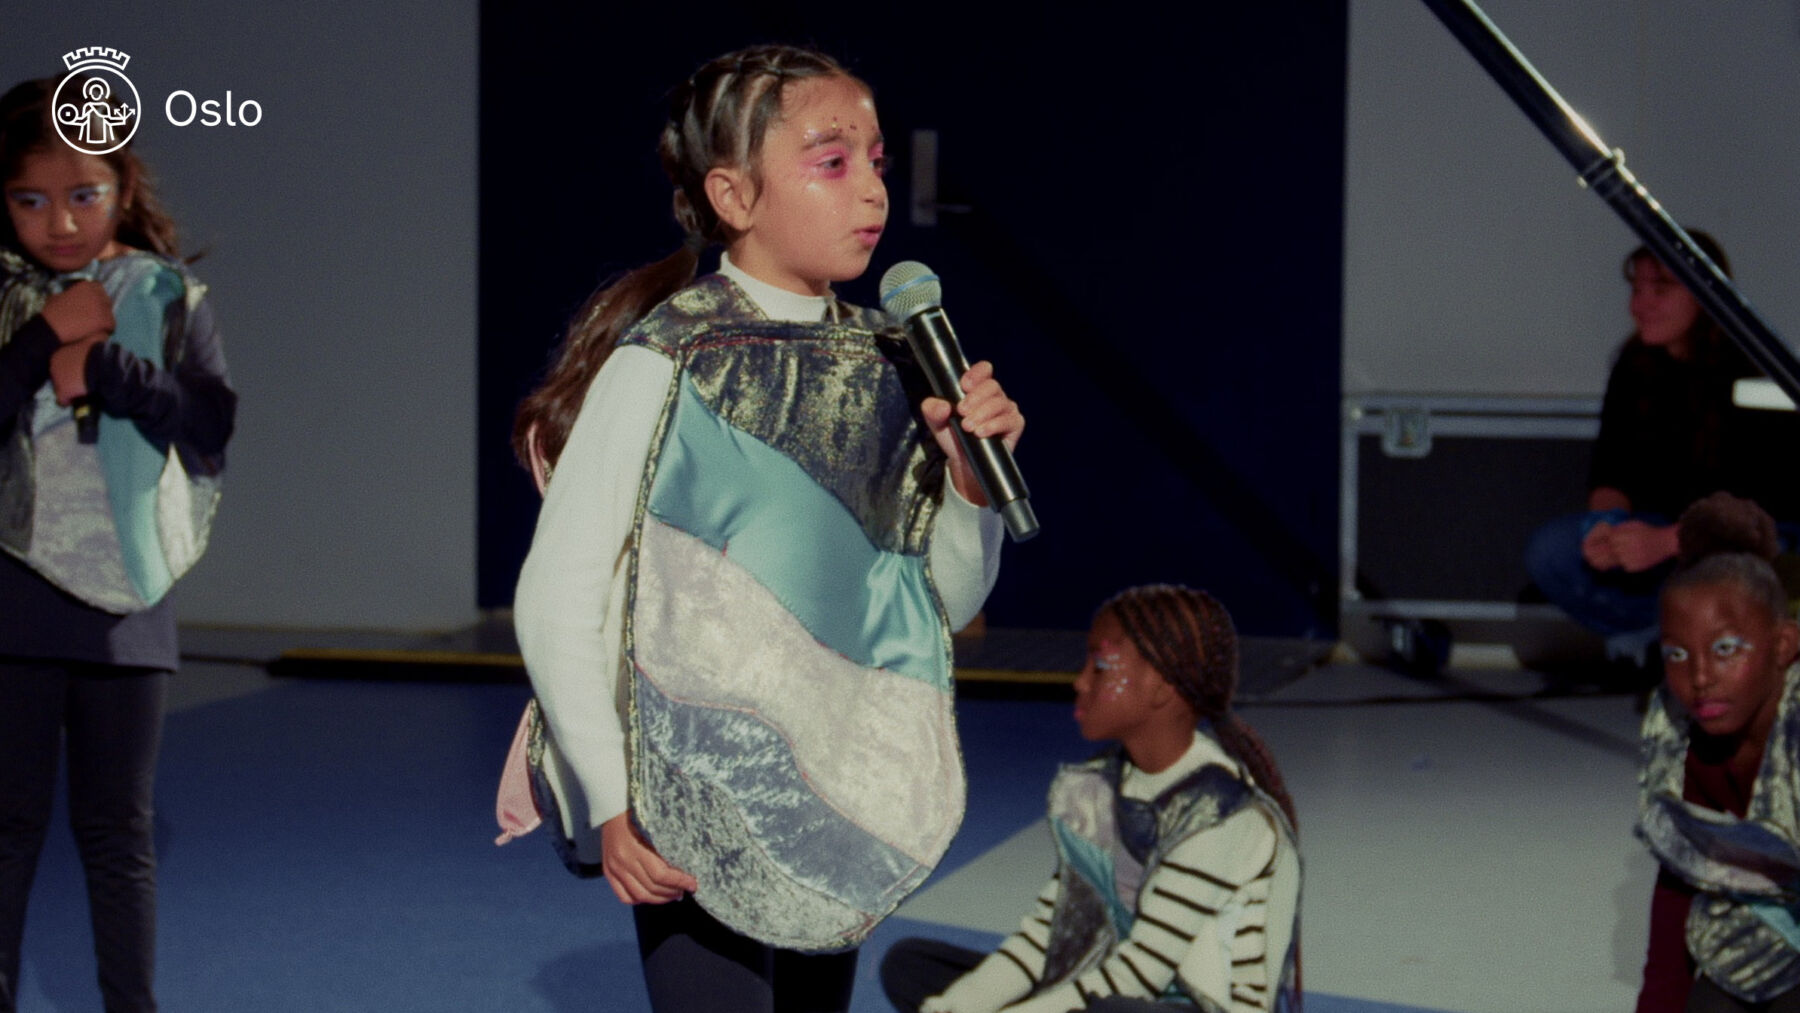 Skjermdump fra video av barn som synger i en mikrofon.